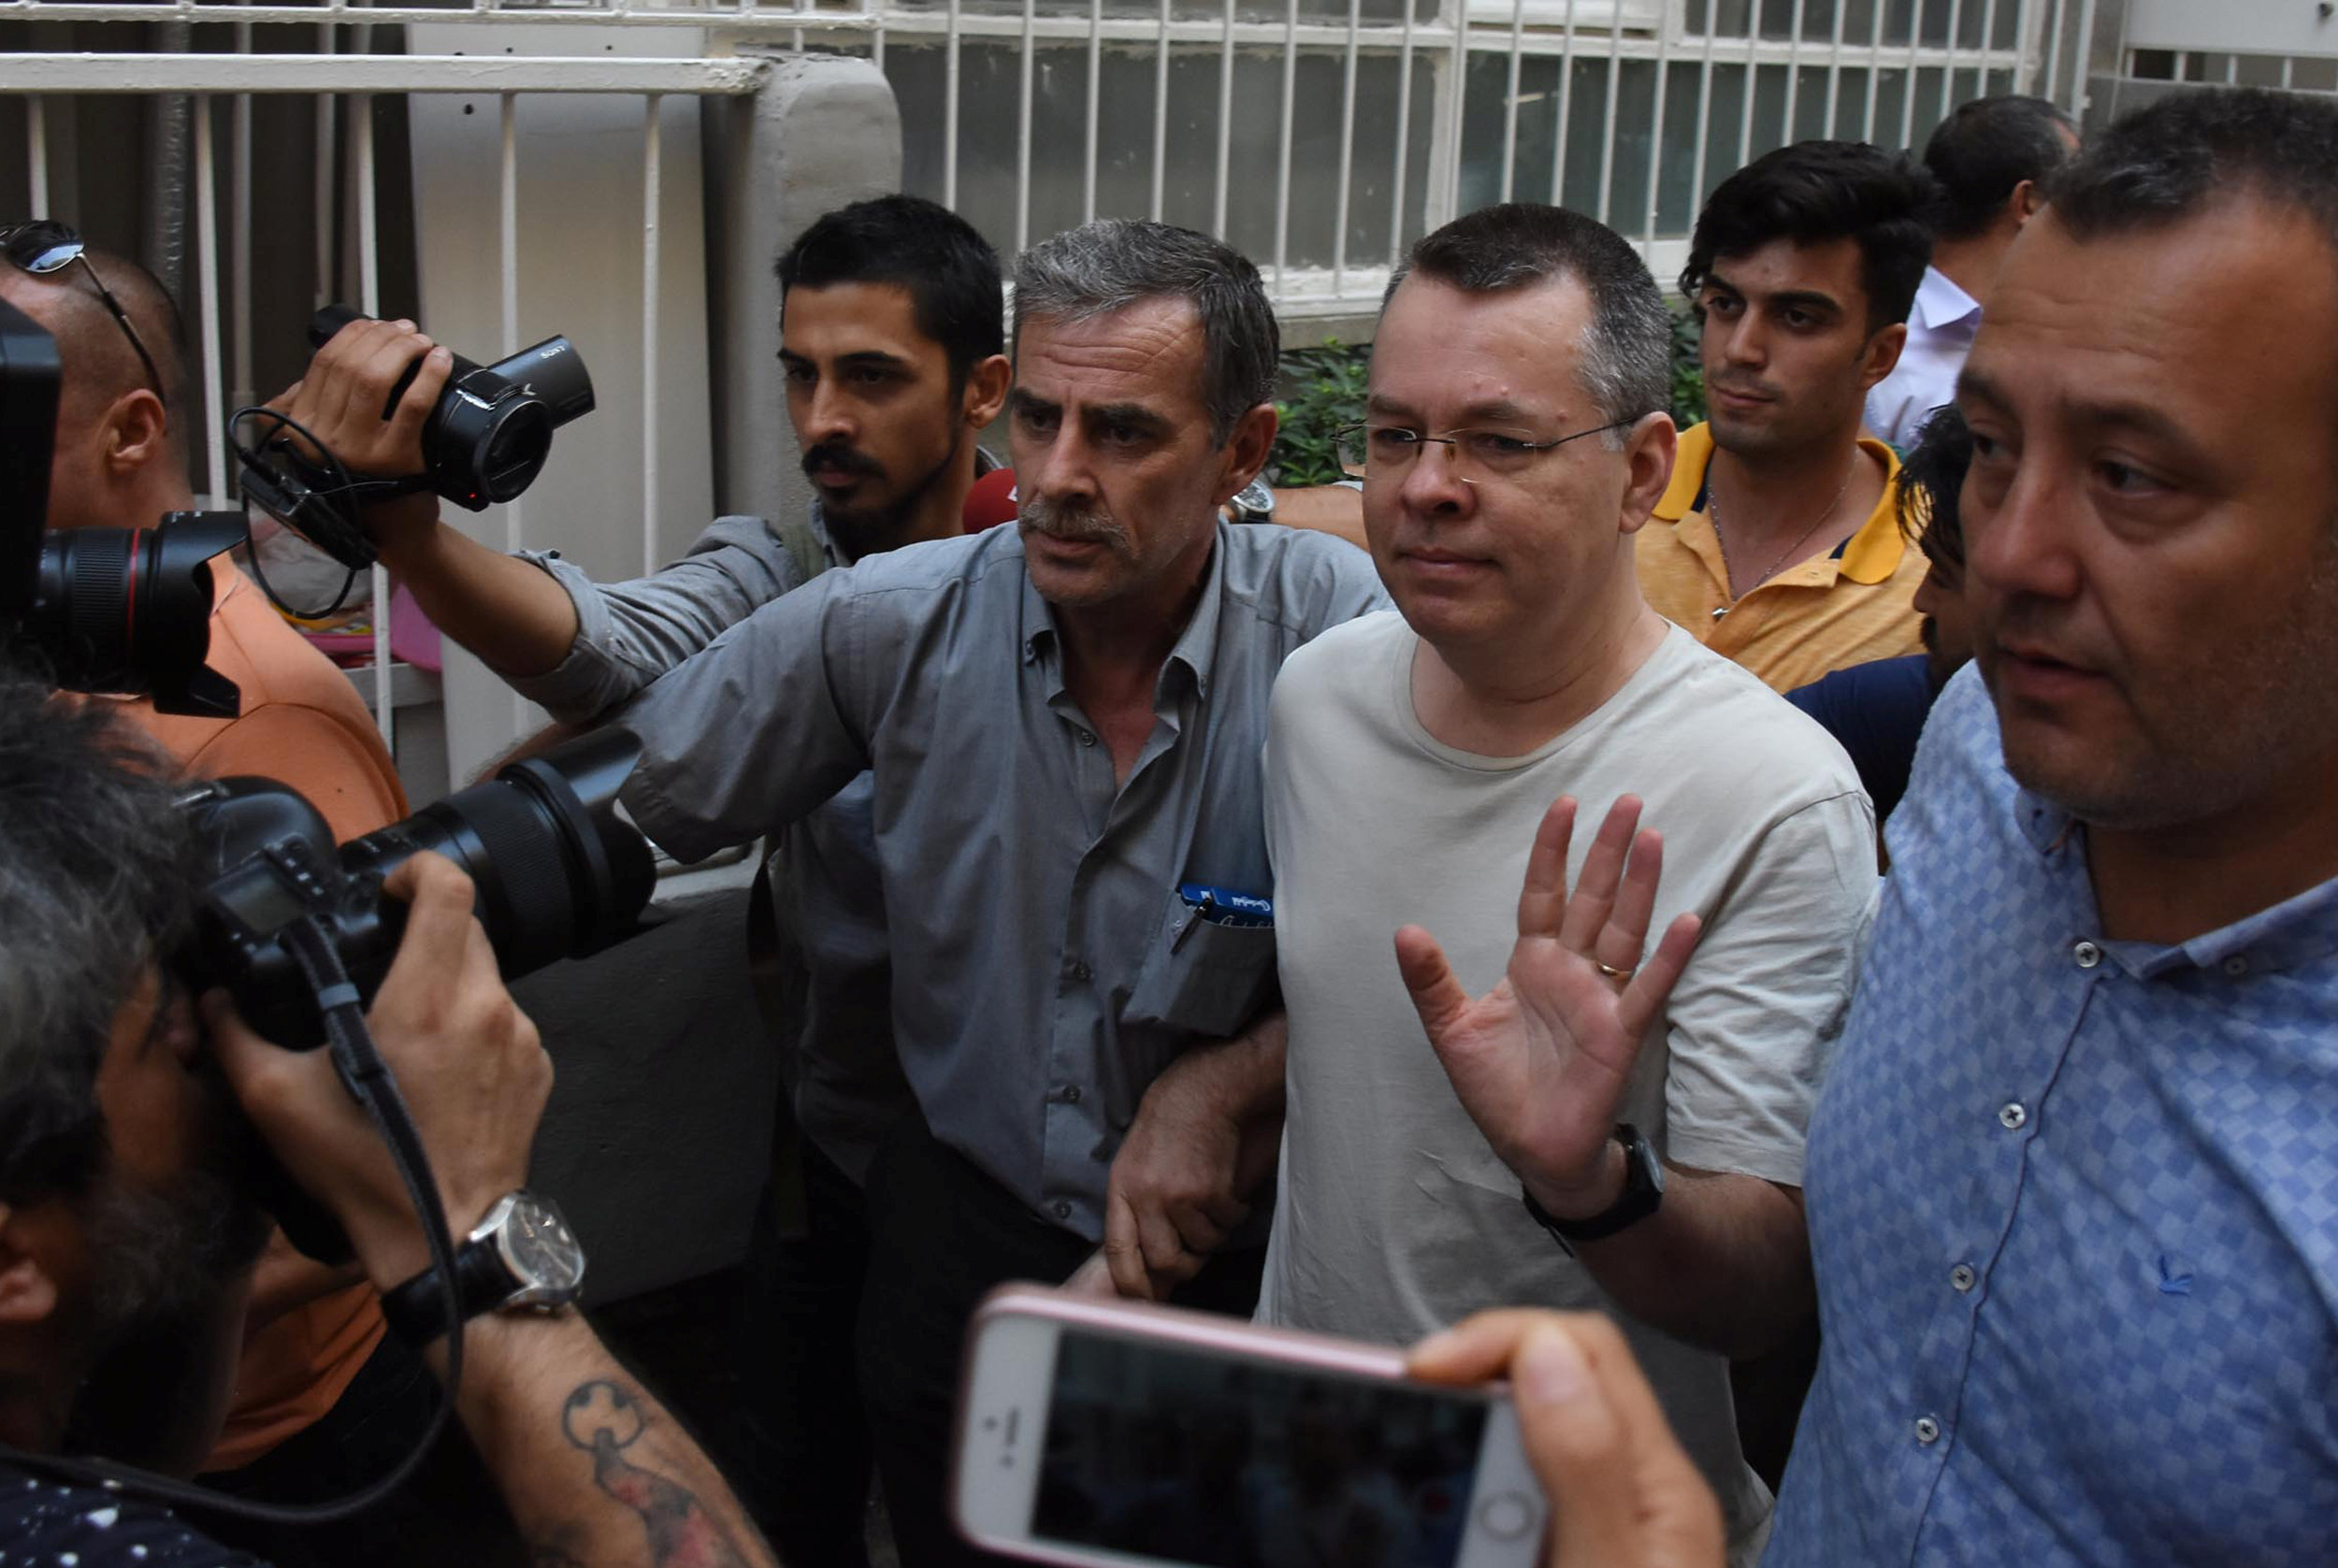 القس الأميركي آندرو برانسون يصل منزله بعد الإفراج عنه من سجن في مدينة إزمير التركية، 25 يوليو 2018. رويترز 